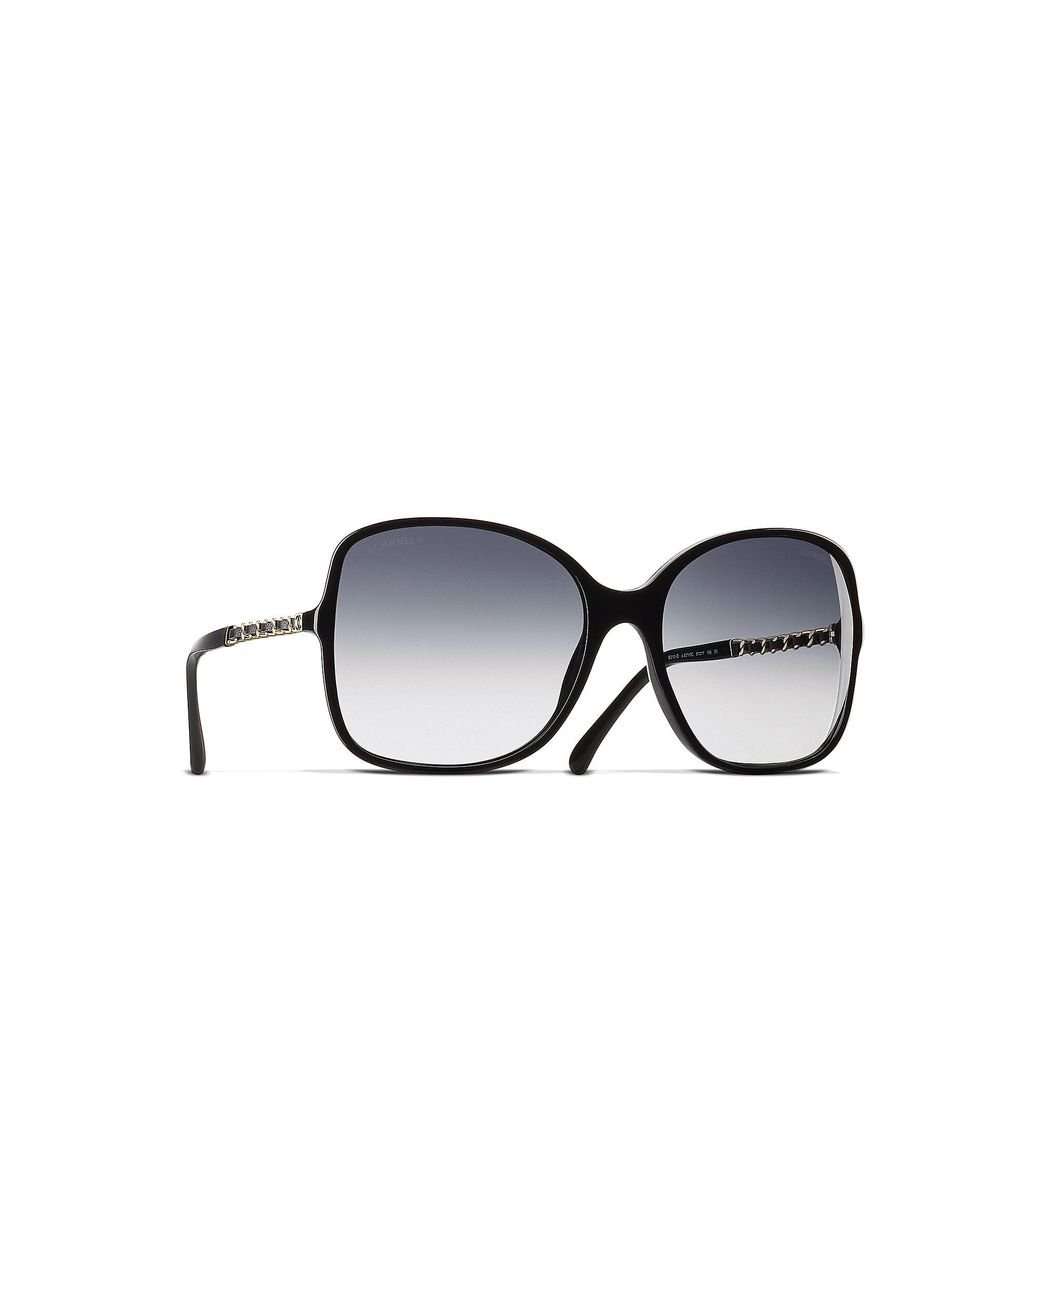 Chanel Square Sunglasses Ch5210q in Black